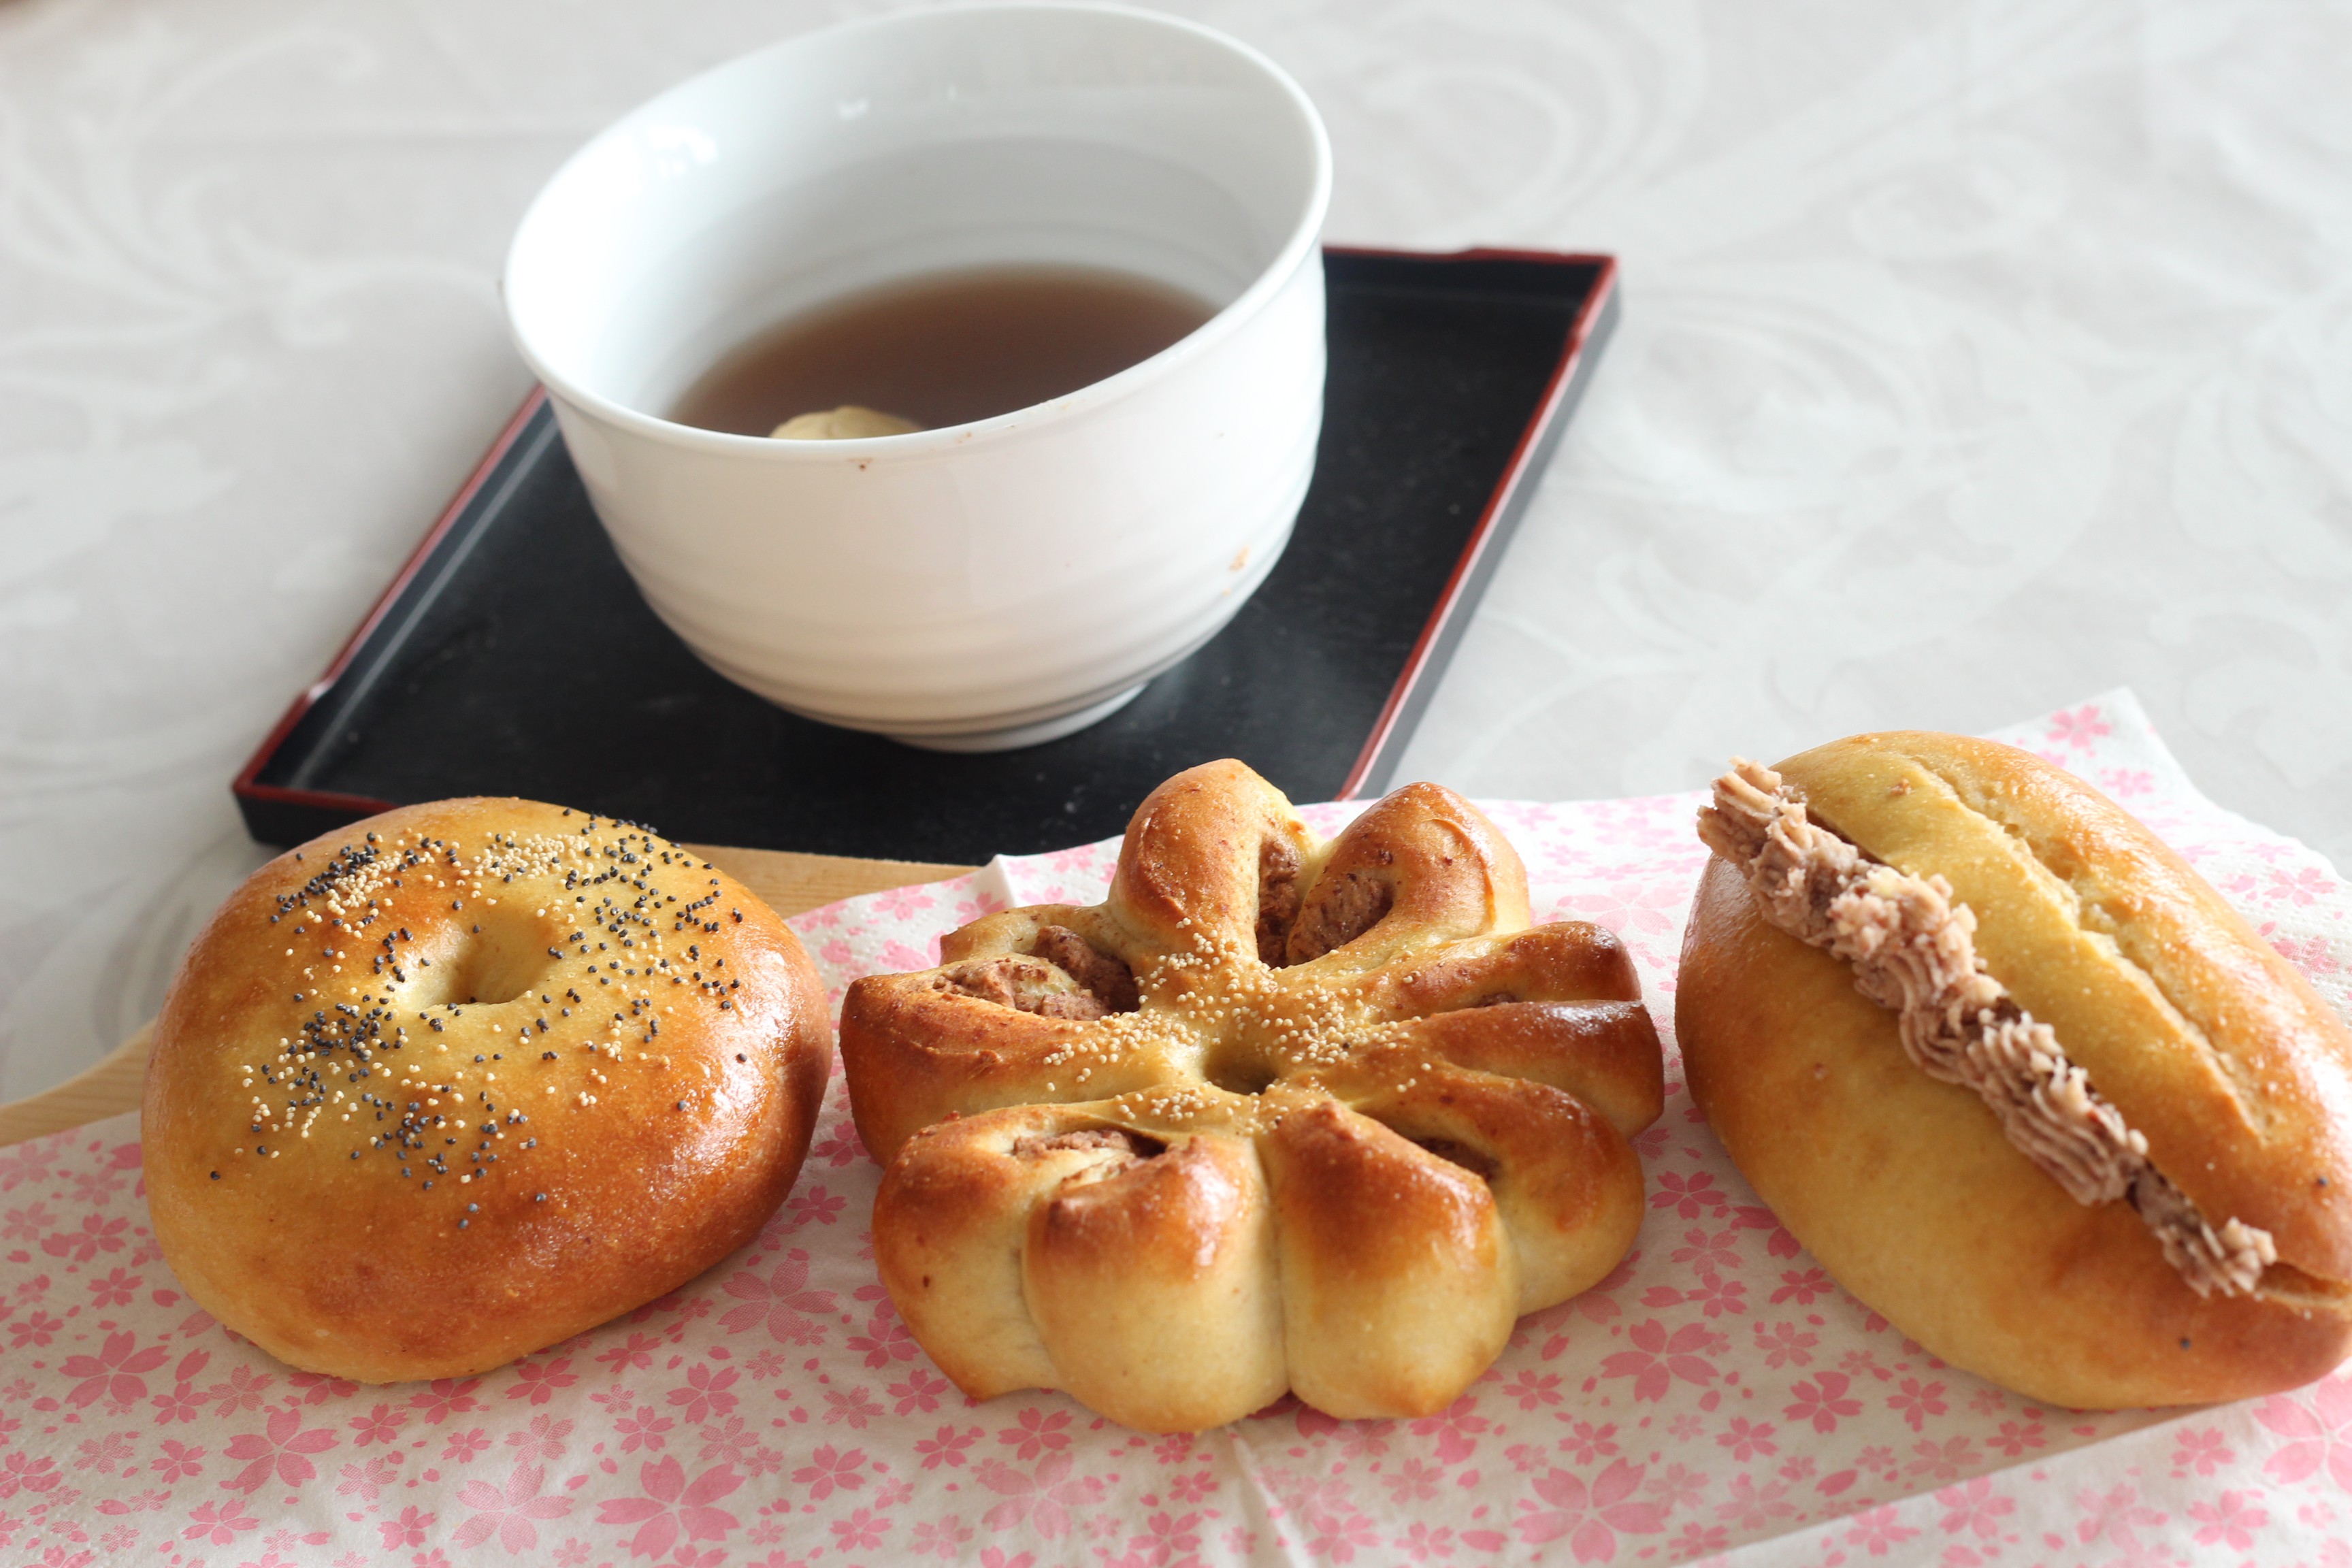 阿倍野区西田辺a-ta-sante糖質制限パン料理教室。京都江部粉を使って餡子から作る糖質制限あんぱんを試作しました。